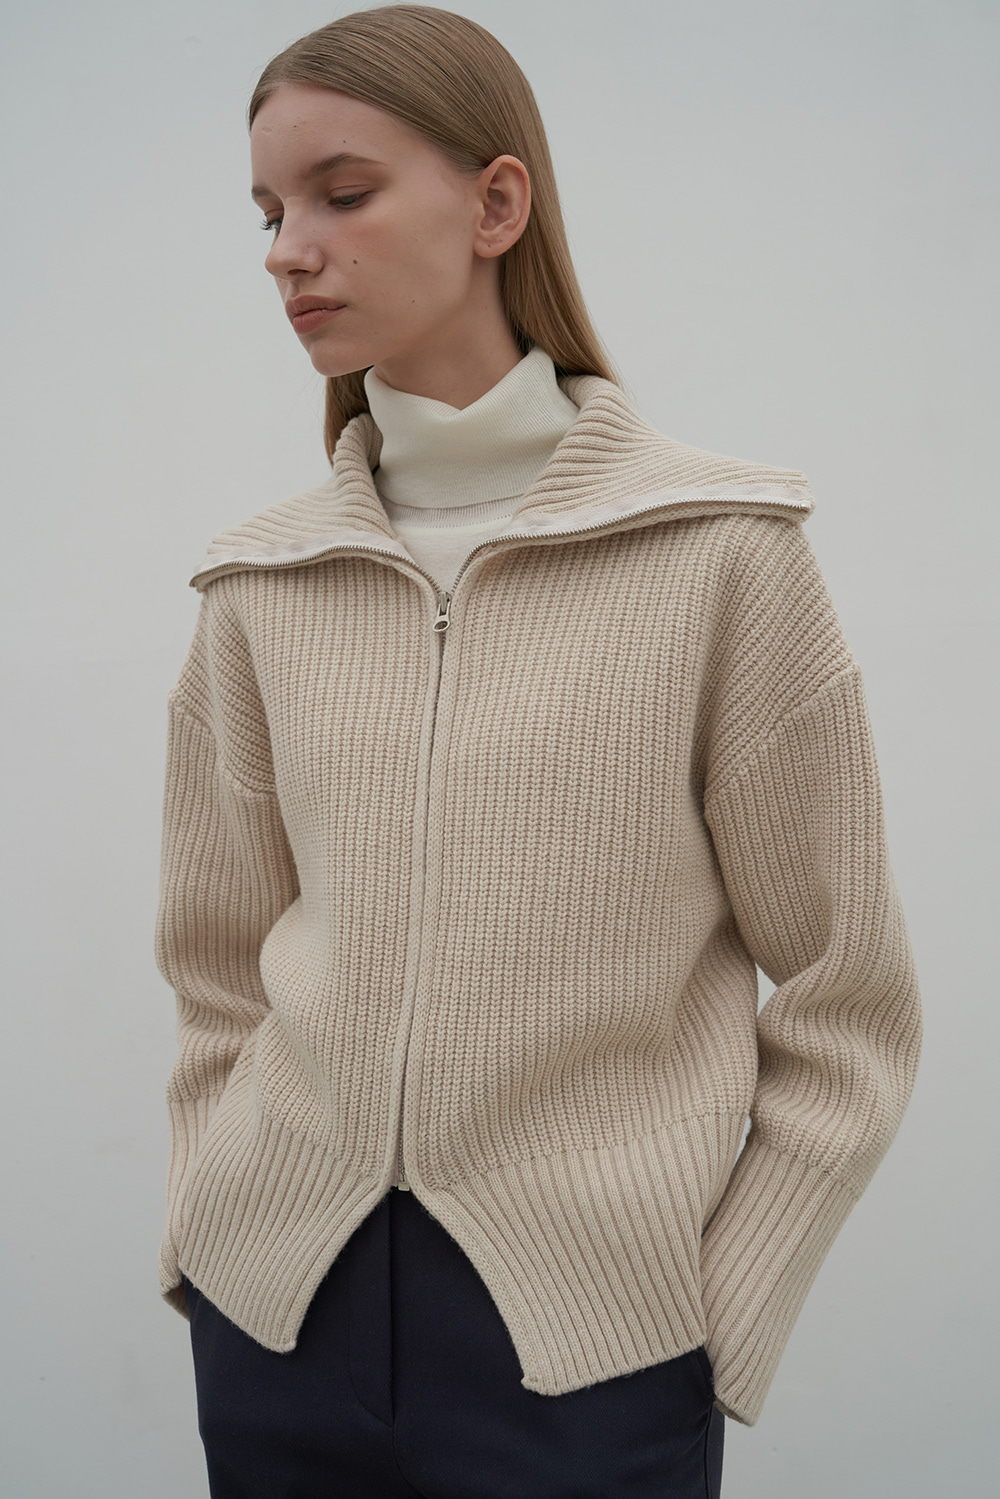 Wool zip-up knit _ Beige